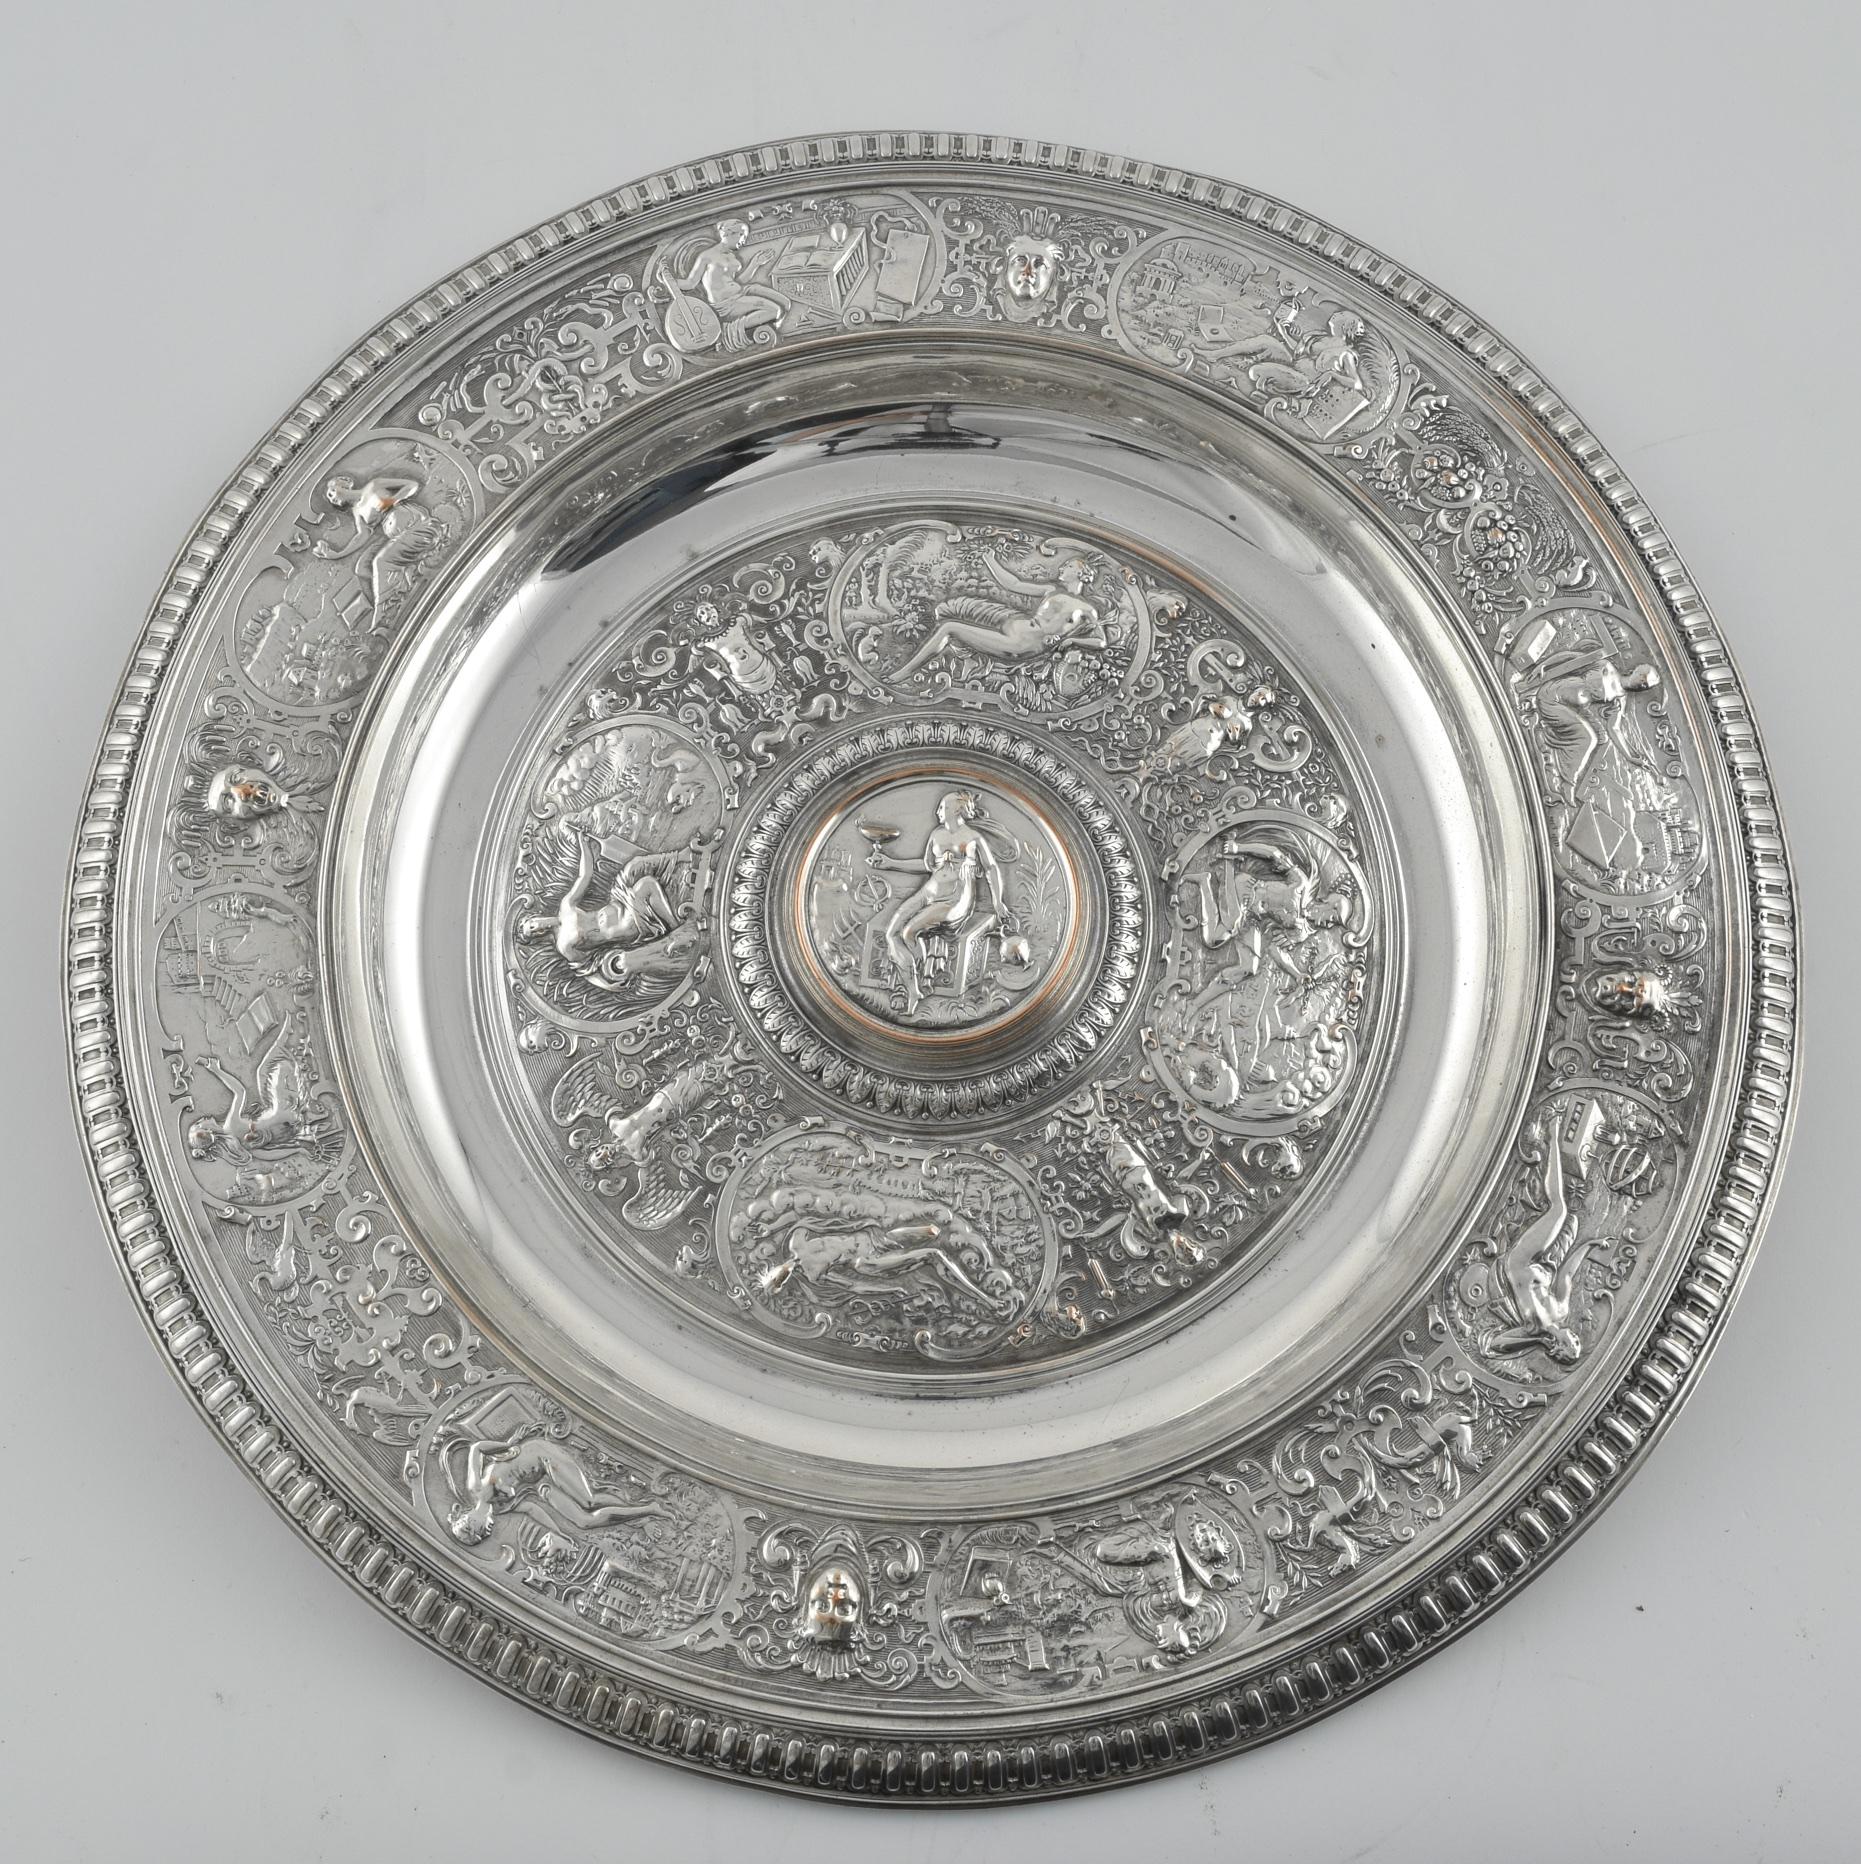 Le bassin de Temperance original a été fabriqué par François Briot vers 1585 et a été acquis par le V&A en 1855. La reproduction la plus remarquable est le trophée en argent doré du championnat de Wimbledon des dames en simple, fabriqué par